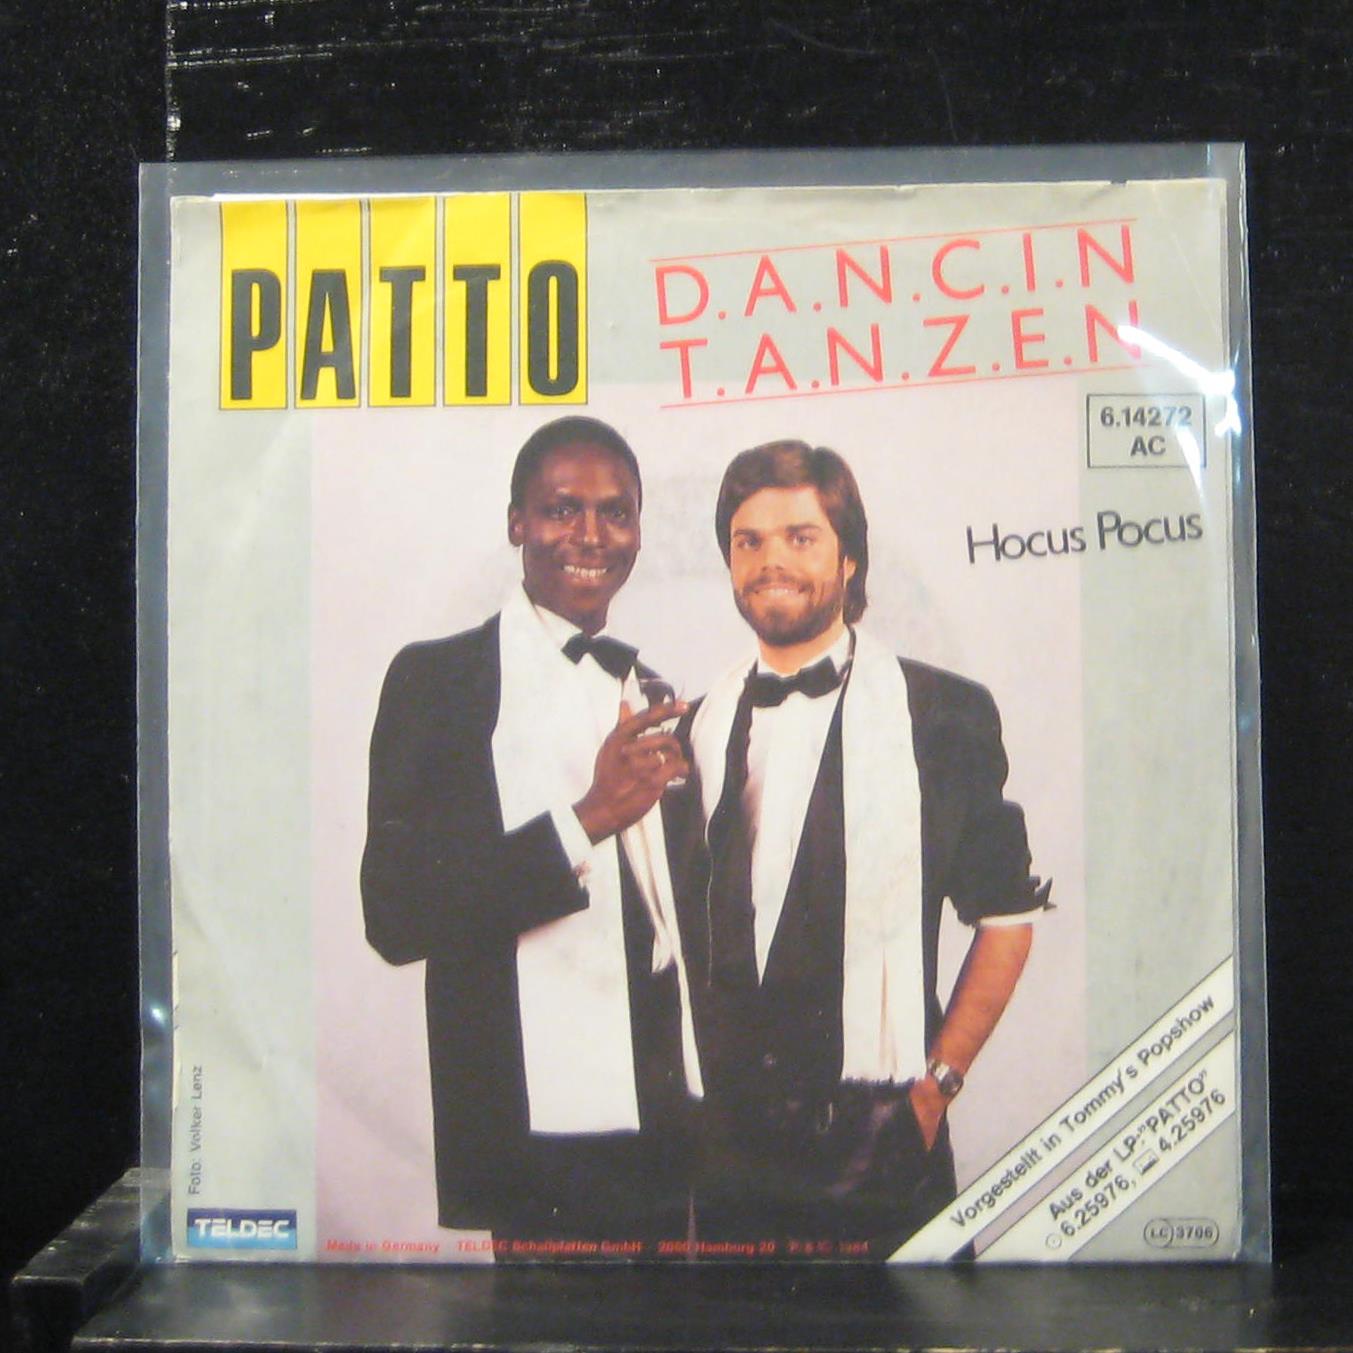 Patto - D.A.N.C.I.N./T.A.N.Z.E.N. VG+ 6.14272 Germany 1984 Shuga Records